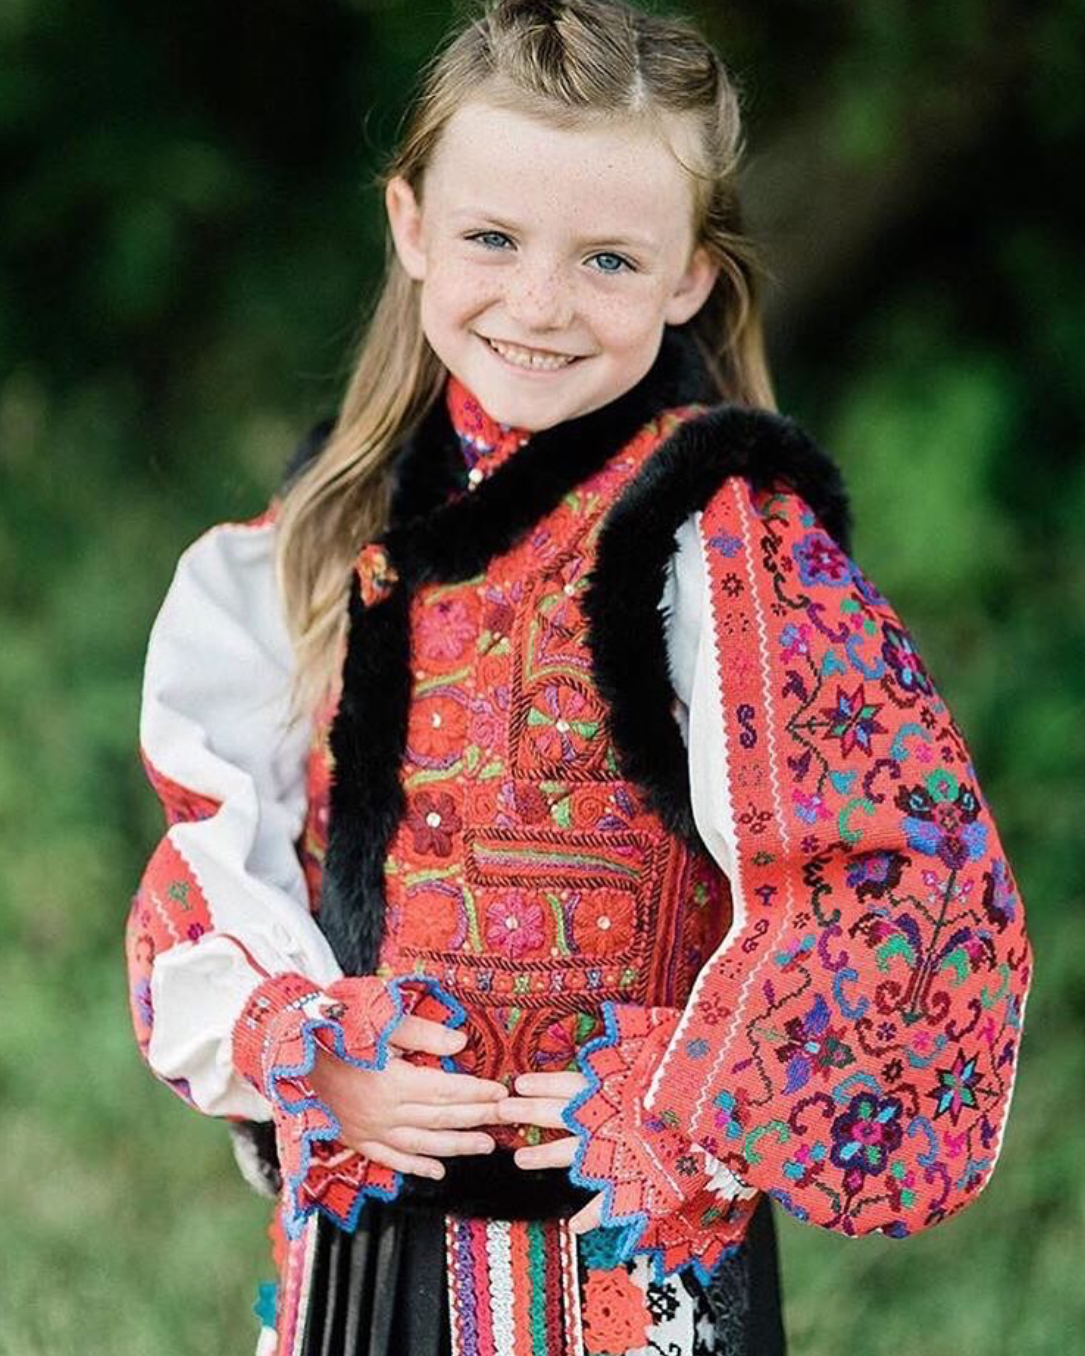 1/ 12 漂亮的罗马尼亚姑娘,穿着端庄的传统服装显得感觉的动人 纯净